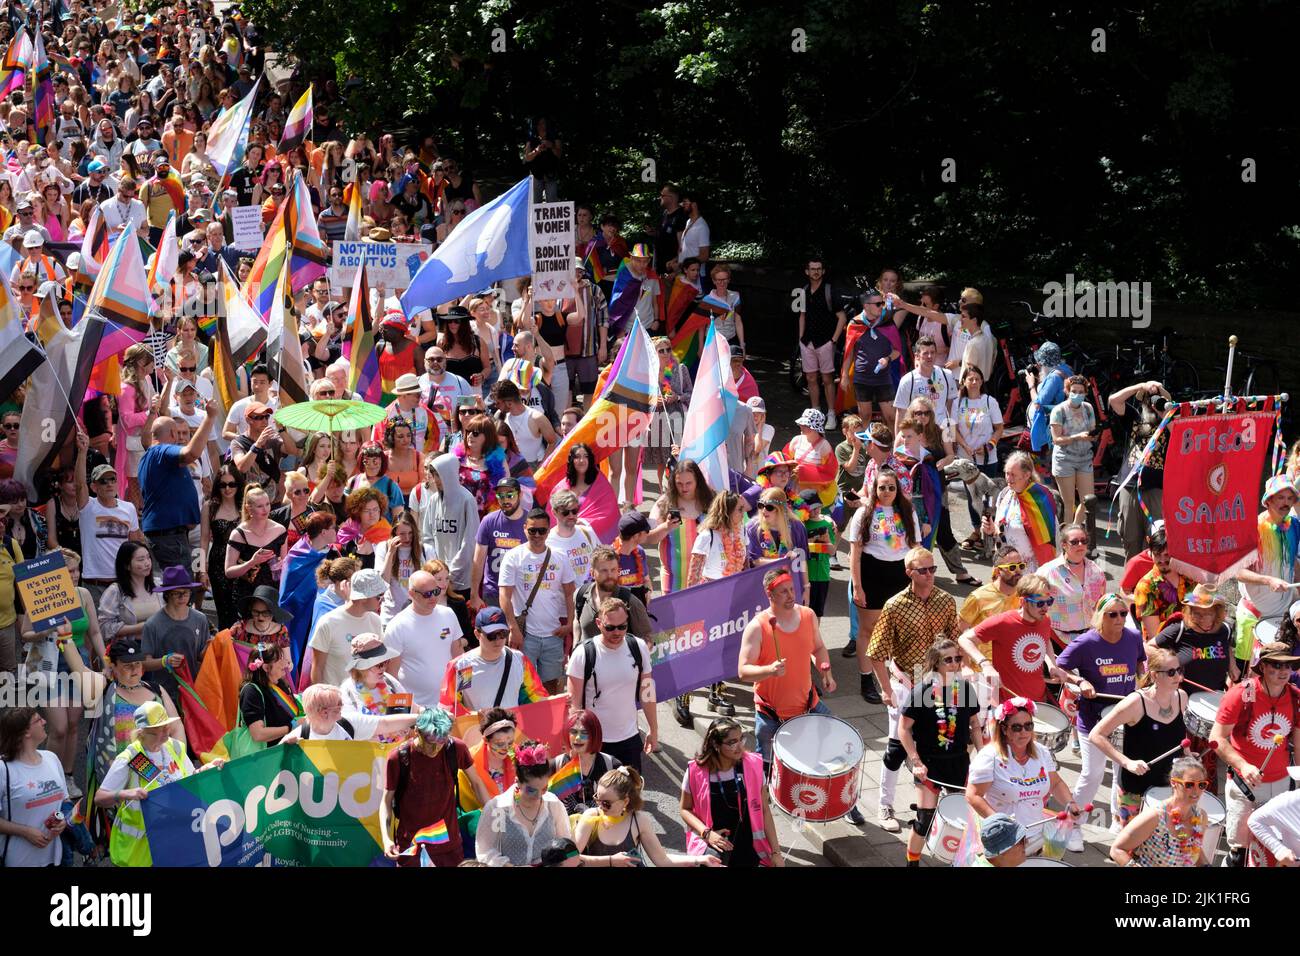 Desfile del Orgullo de Bristol. Foto de stock